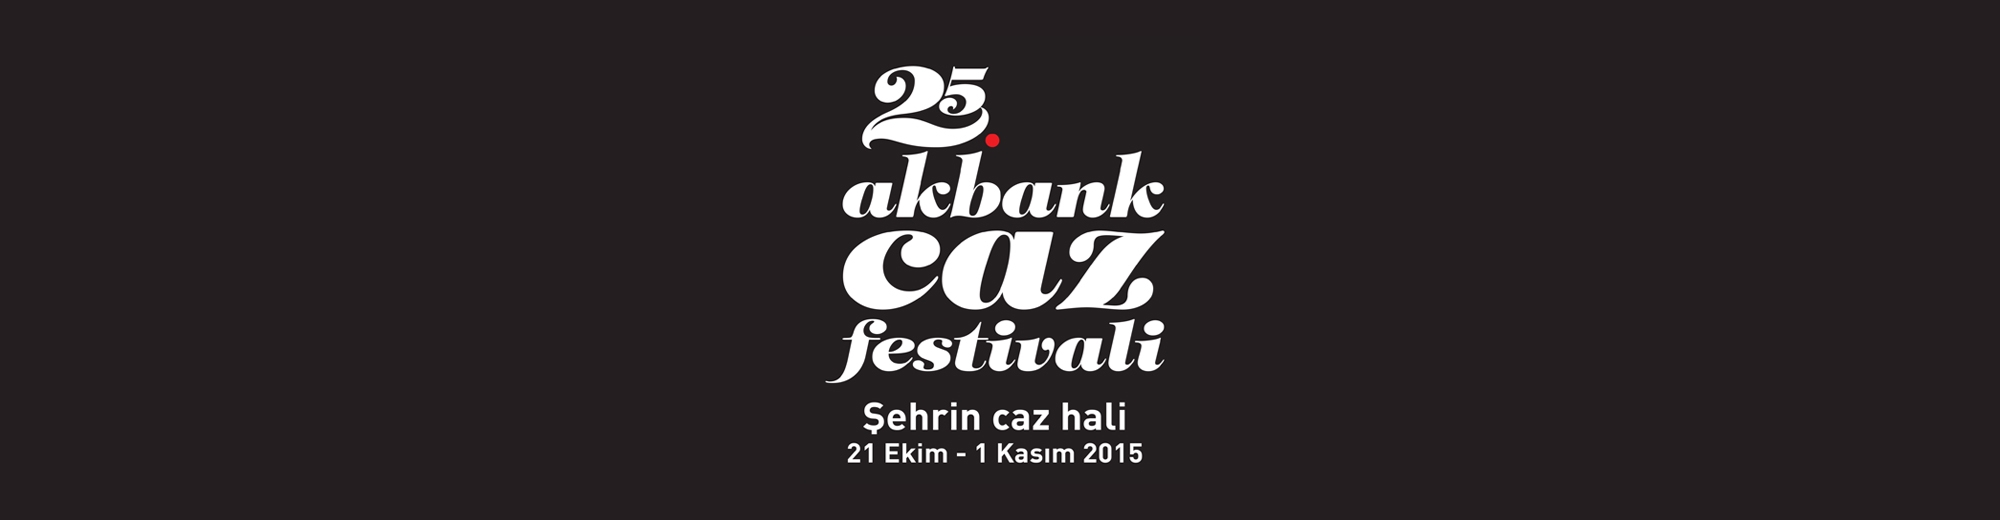 Akbank Caz Festivali Gönüllü Gençleri Bekliyor